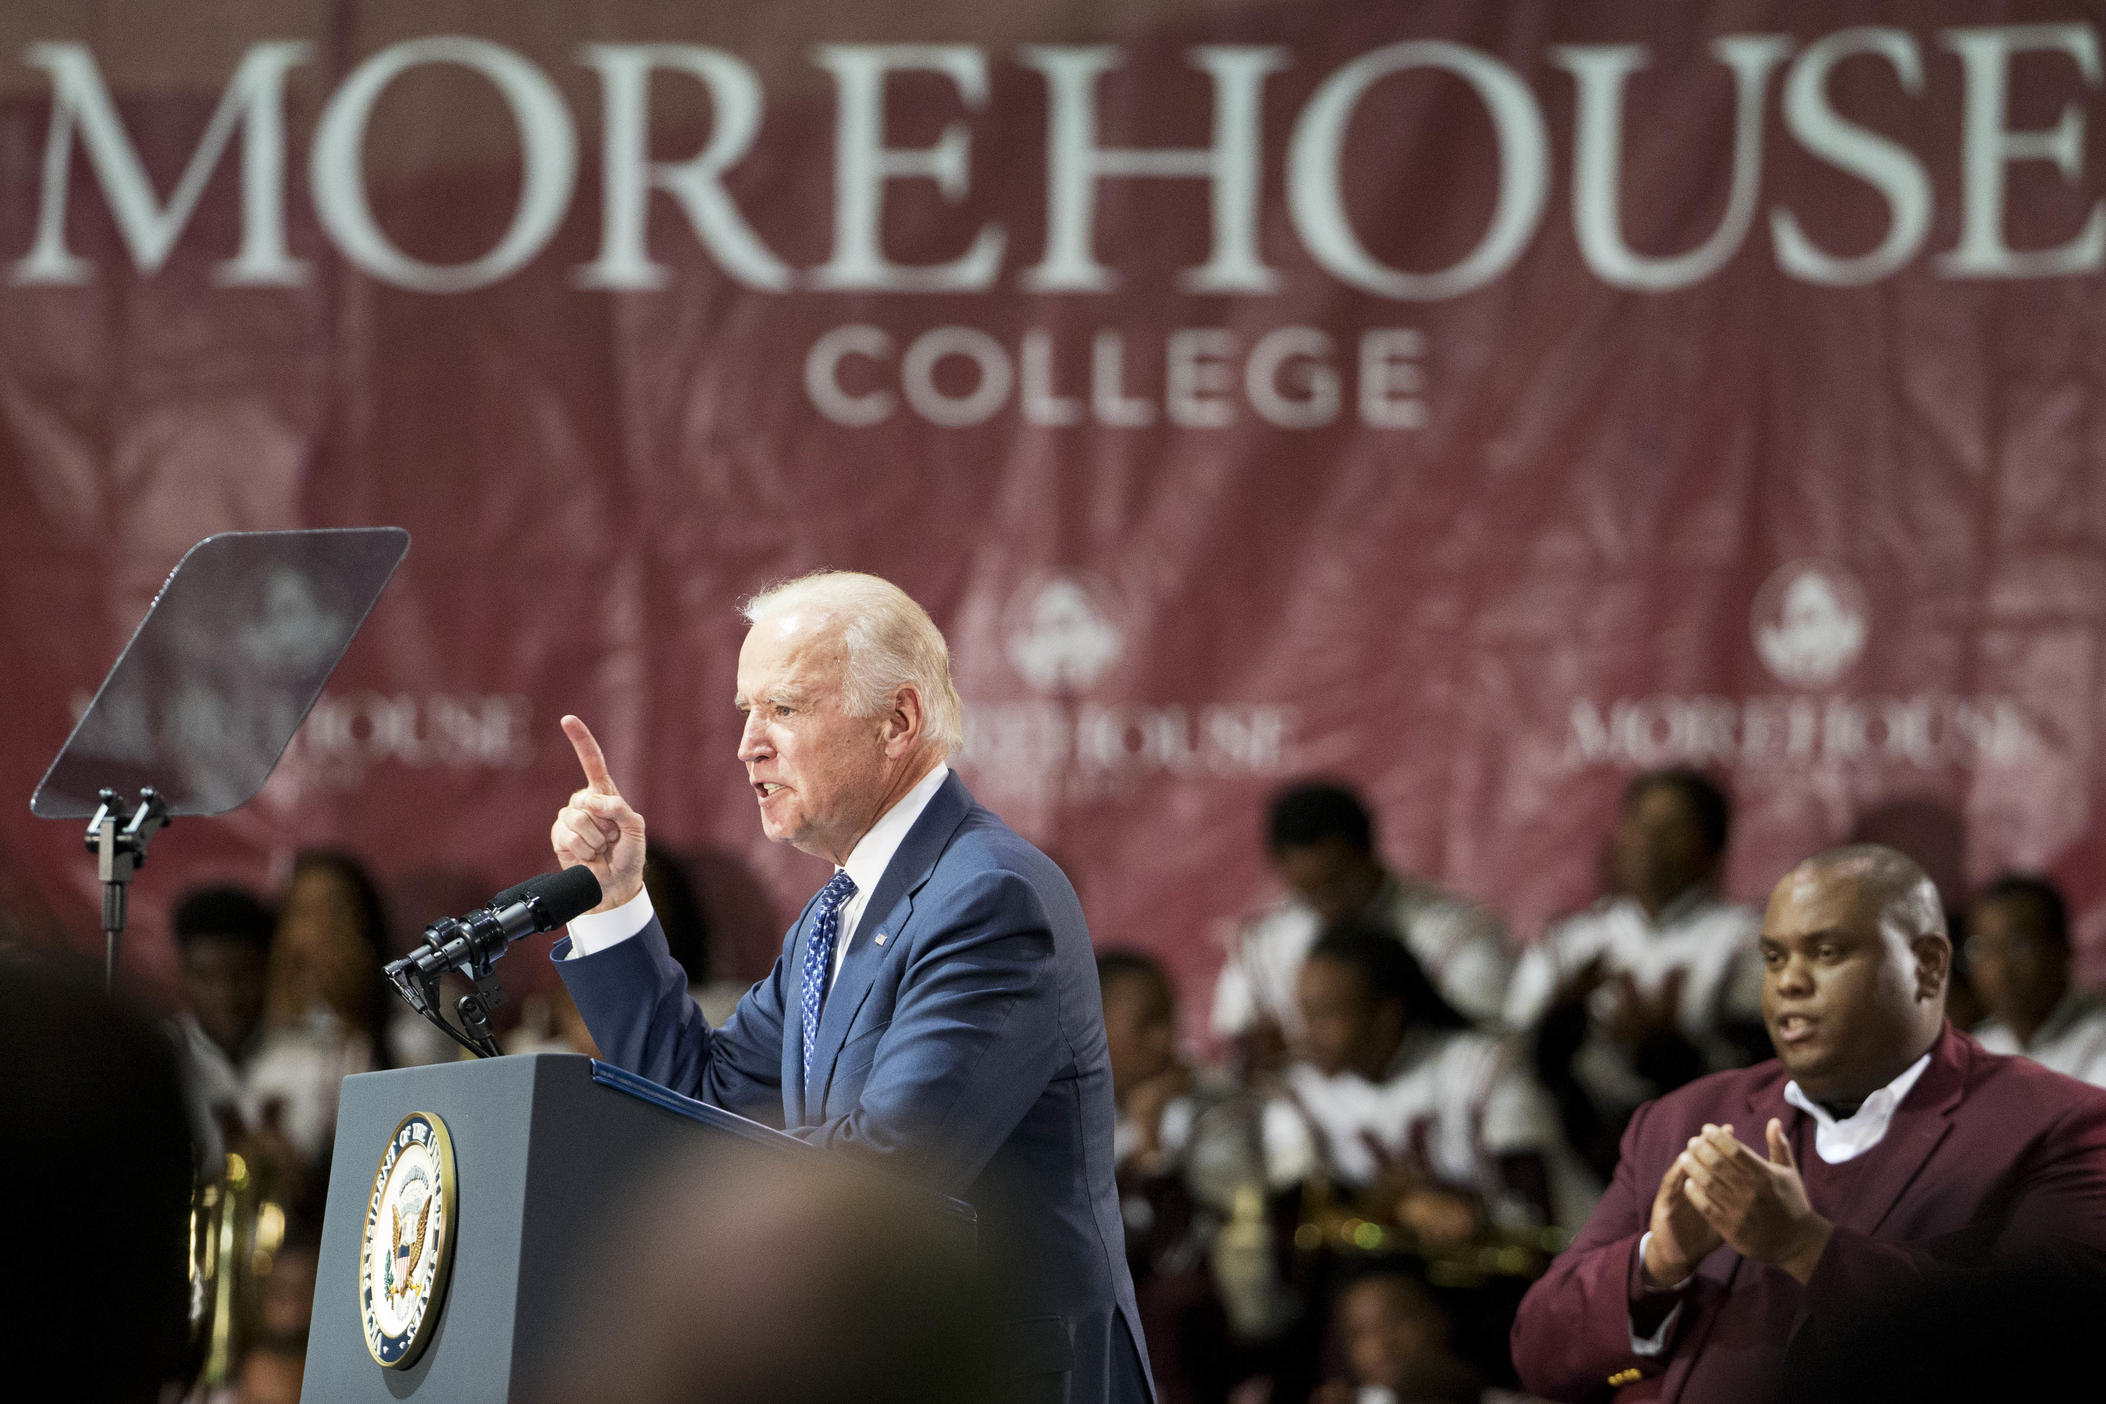 Vice President Joe Biden speaks at Morehouse College Tuesday, Nov. 10, 2015, in Atlanta. (AP Photo/David Goldman)